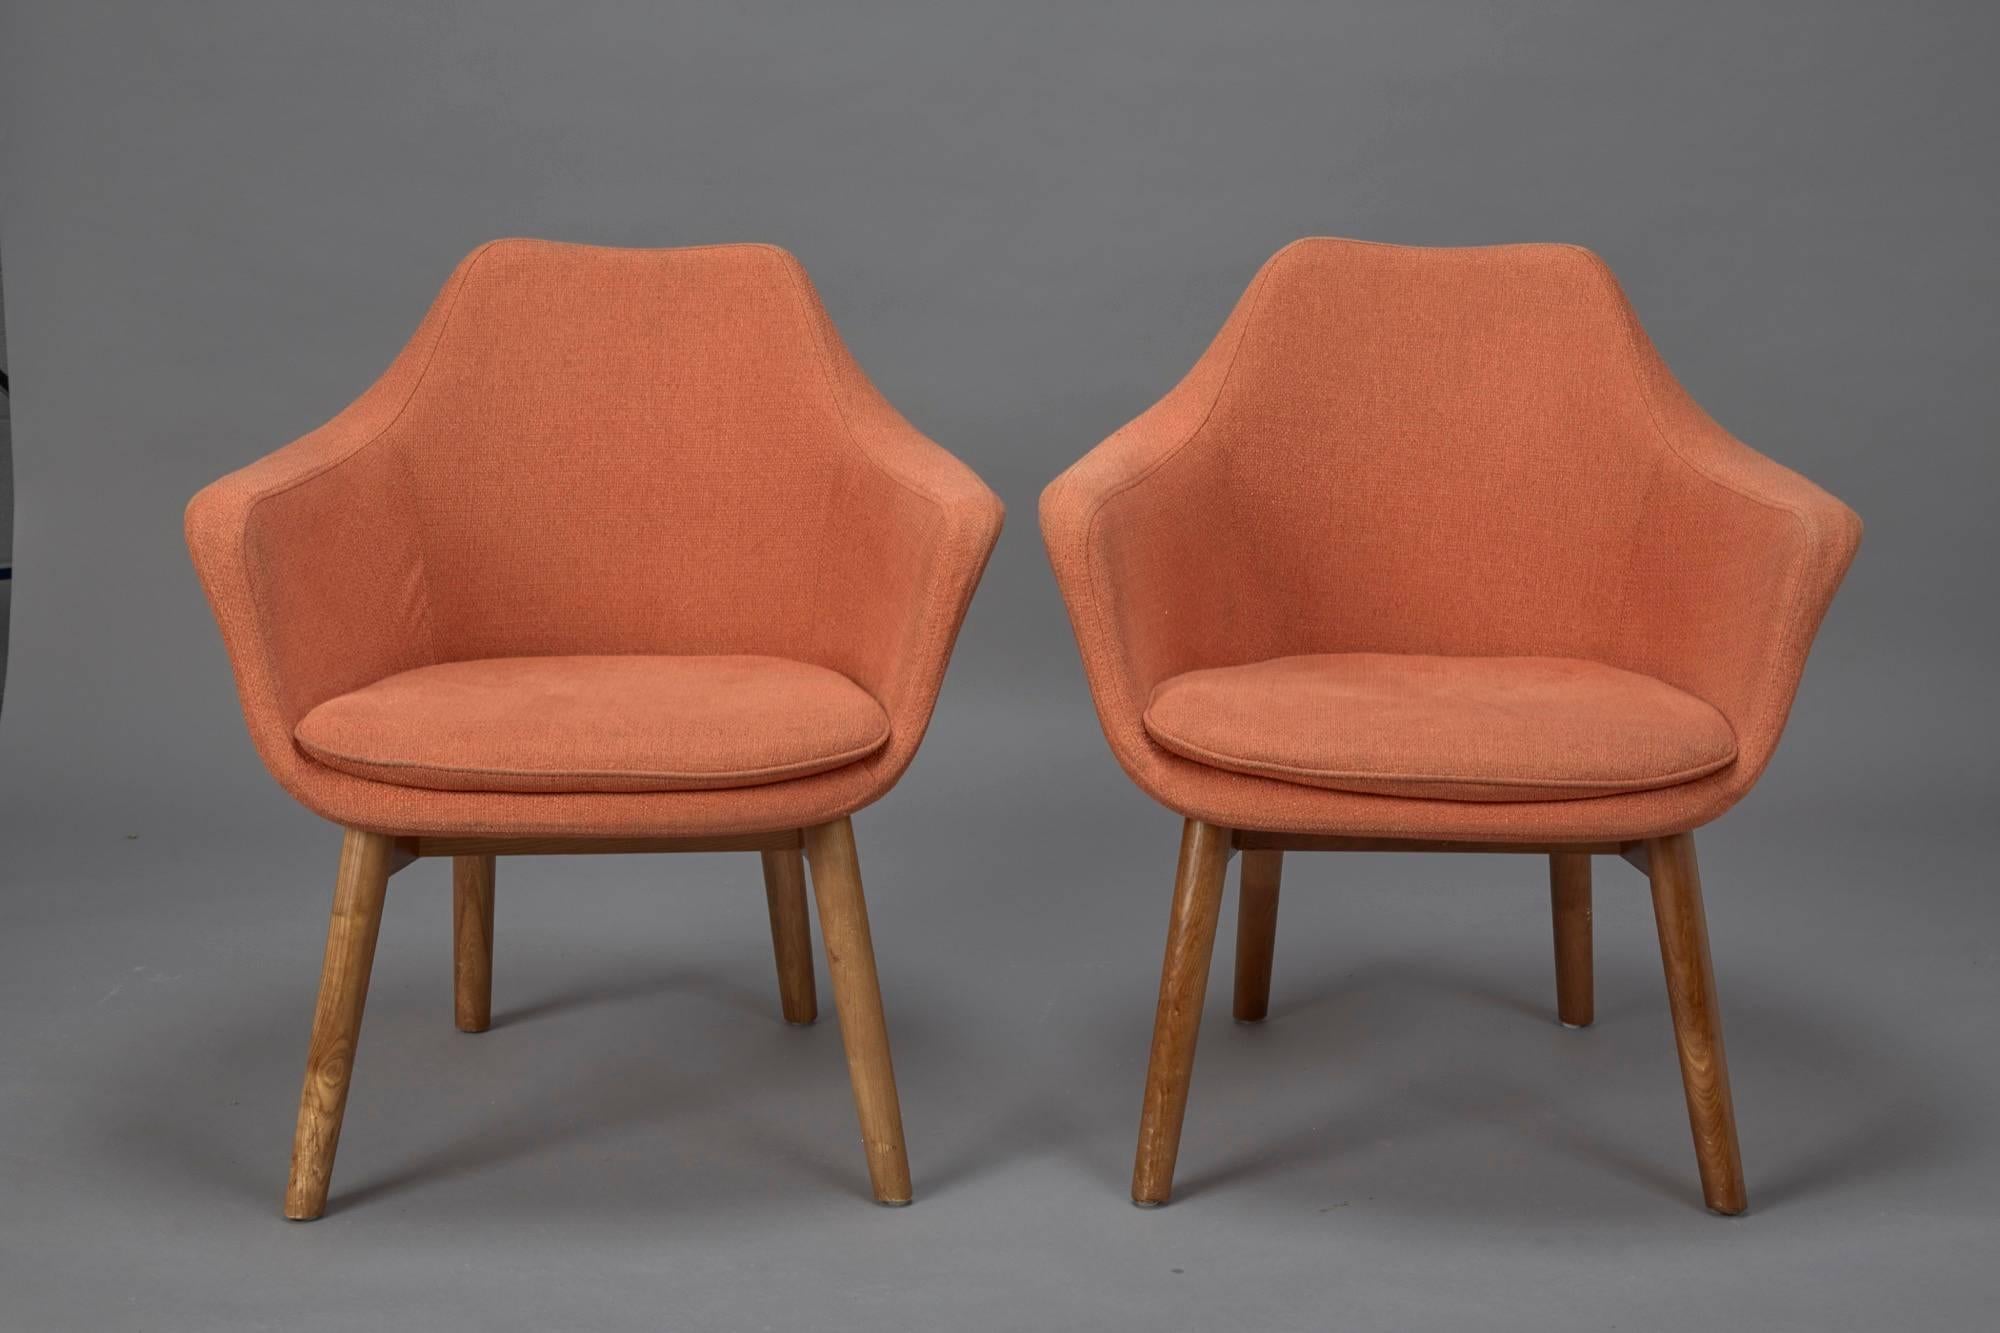 Zwei Mid-Century Modern Sessel im Stil von Eero Saarinen in original orangefarbenem Stoff.
   